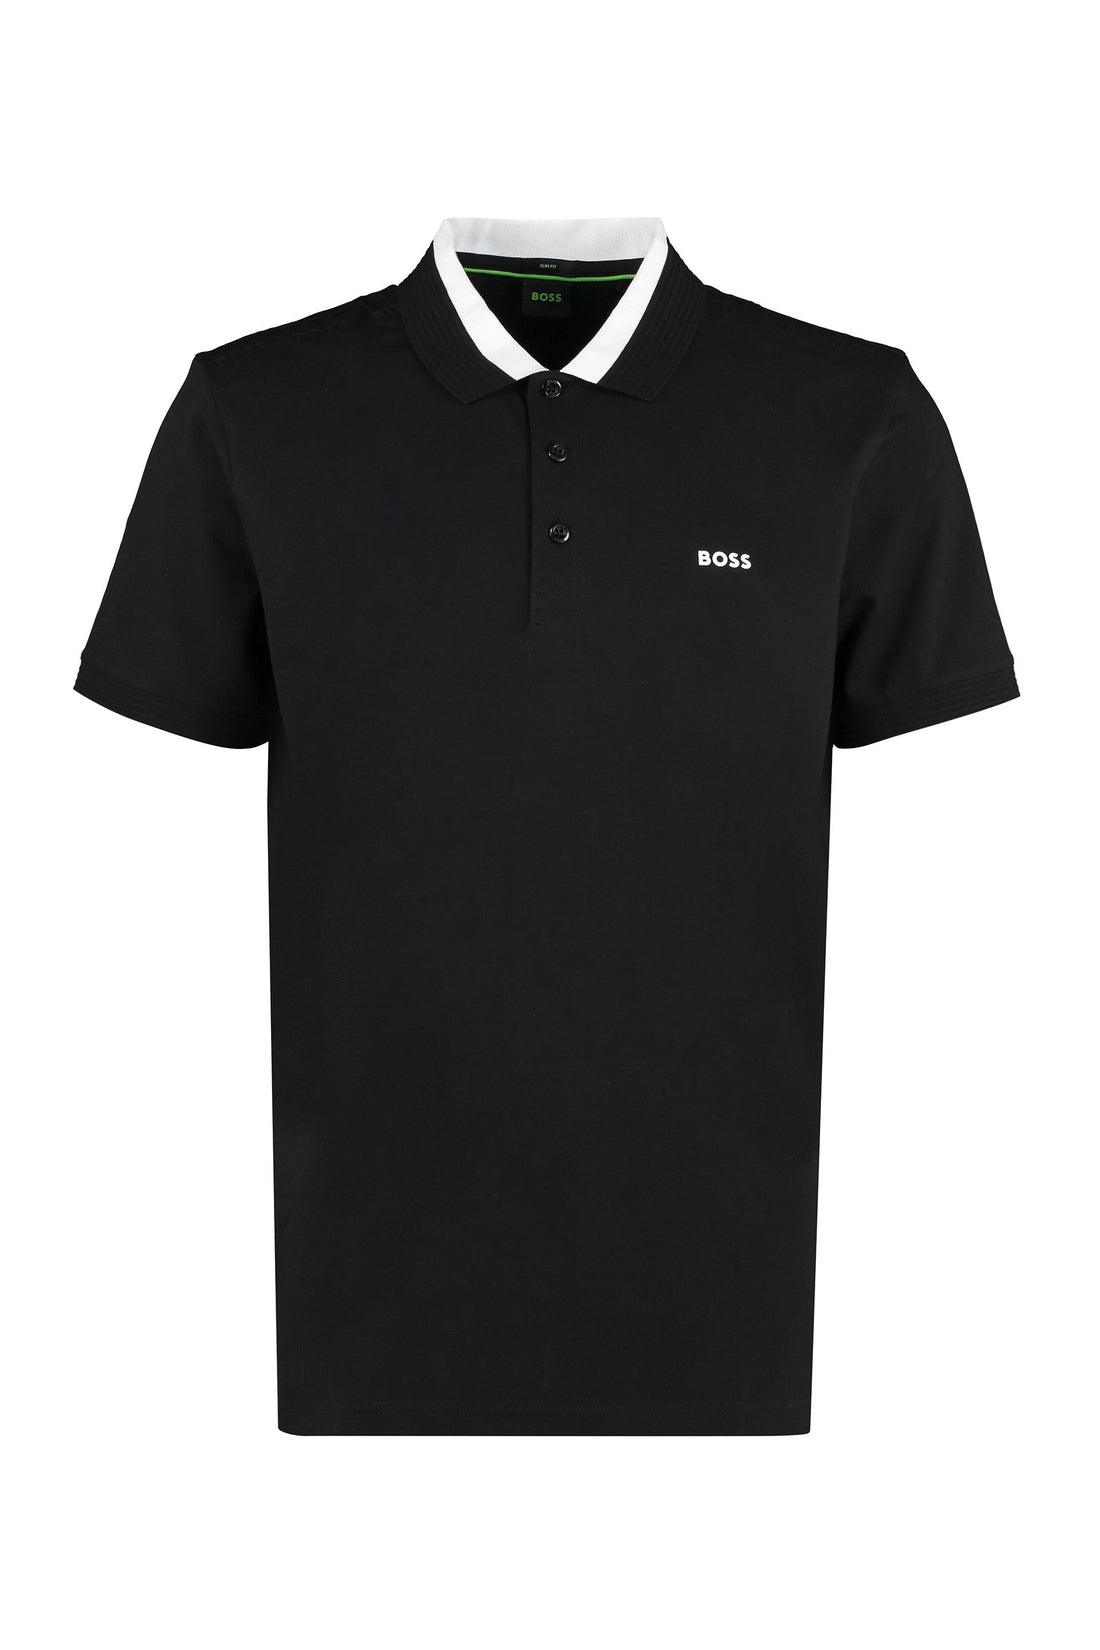 BOSS-OUTLET-SALE-Cotton jersey polo shirt-ARCHIVIST